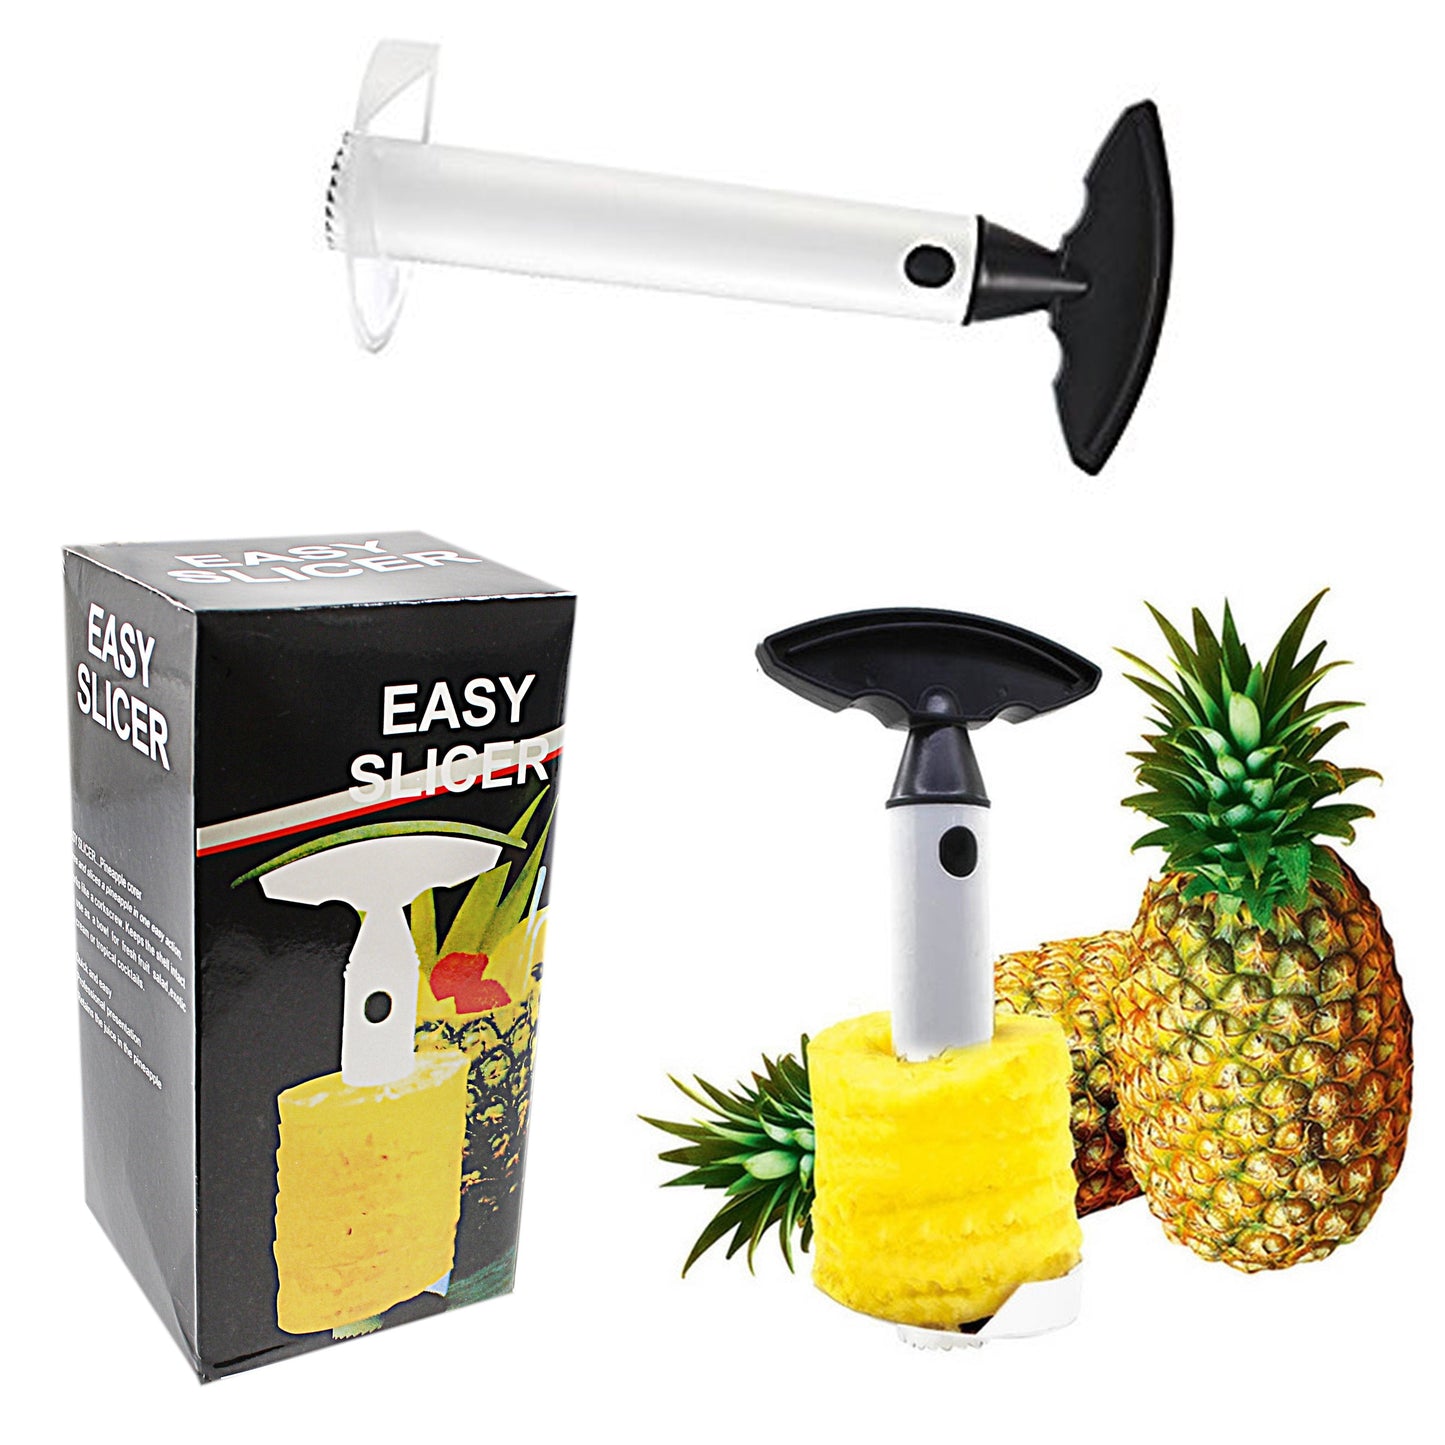 Easy Slicer Pineapple Corer Slicer Peeler Cutter 4740 (Parcel Rate)